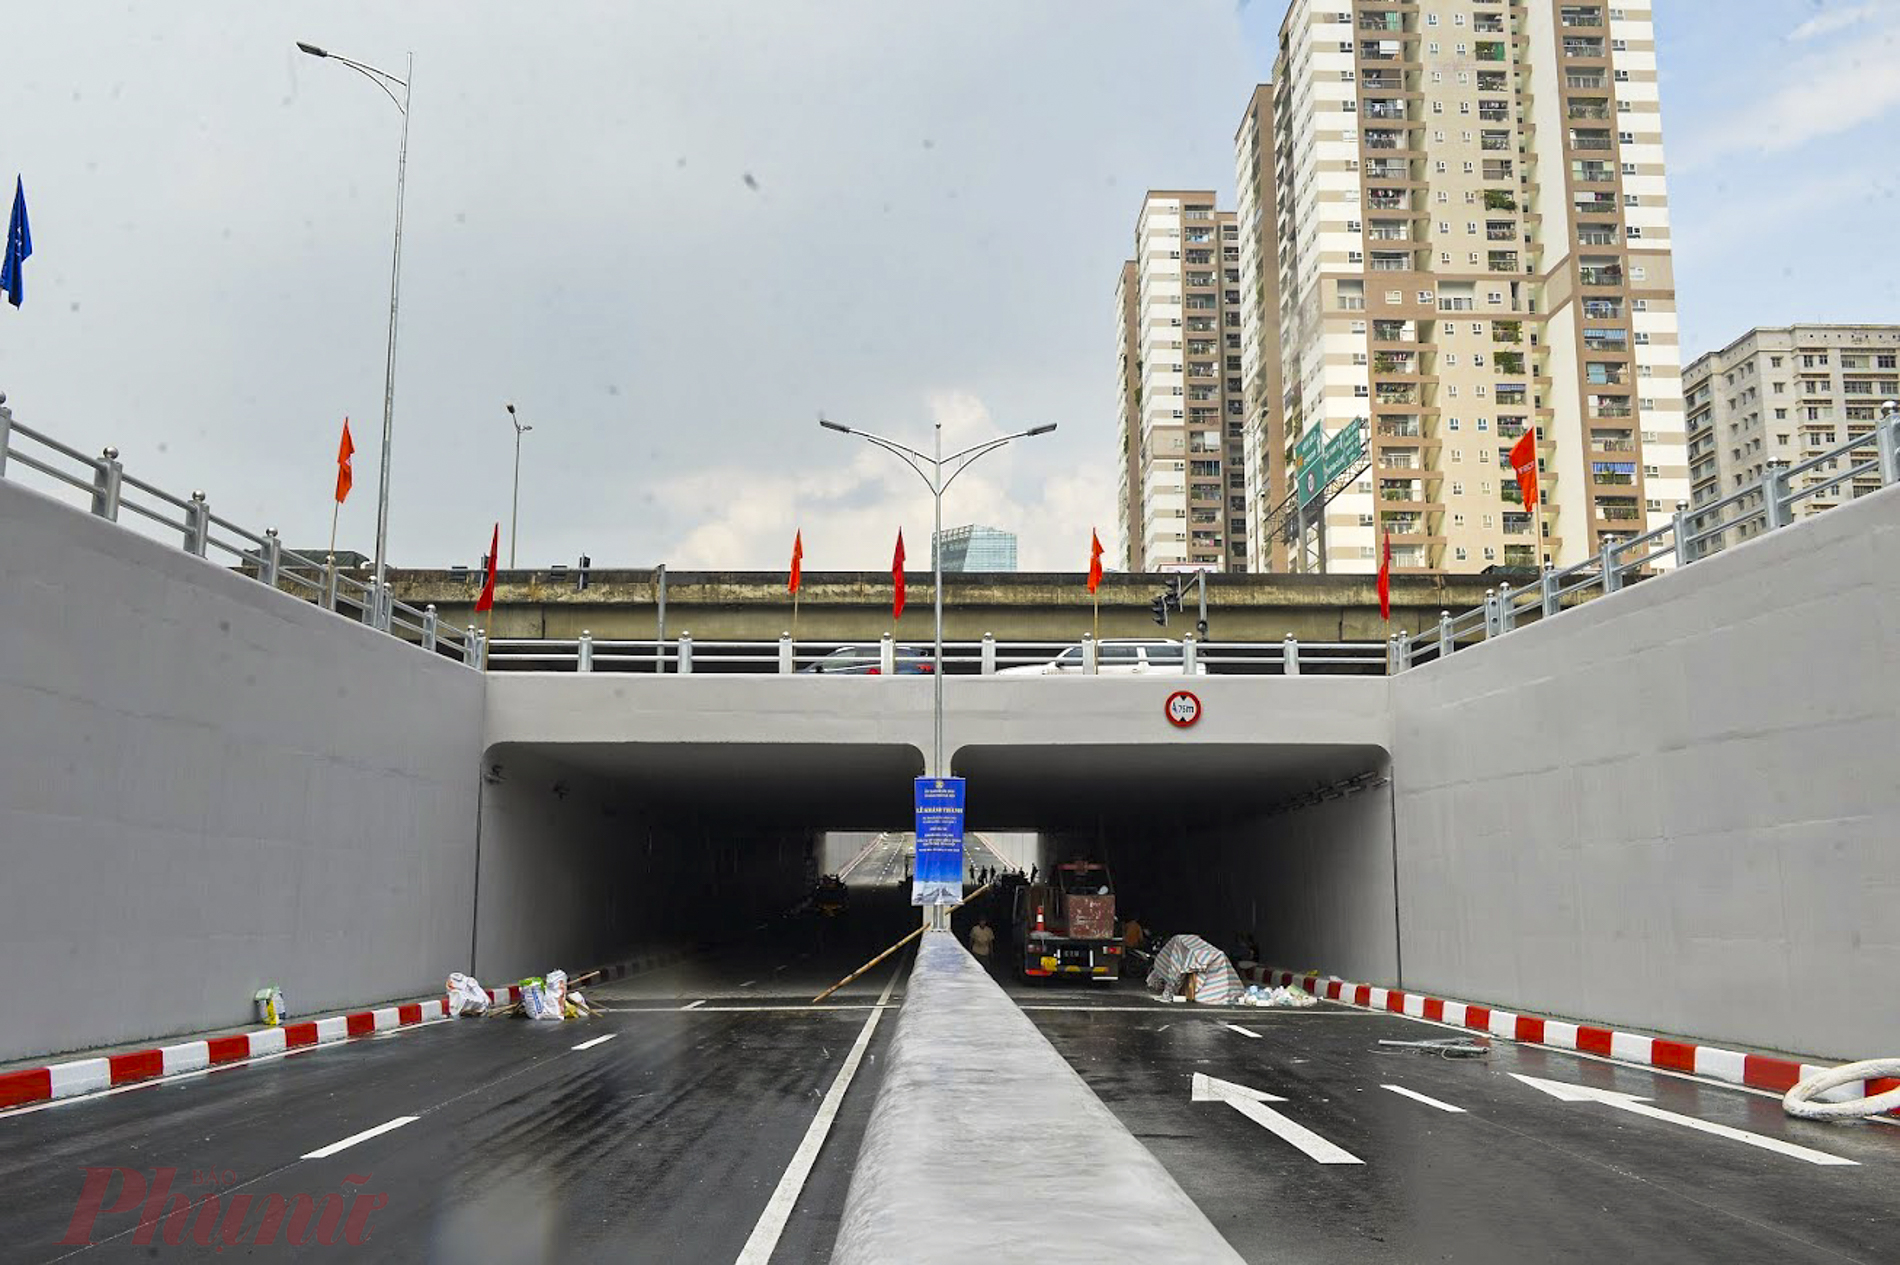 Sau 2 năm thi công, hầm chui Lê Văn Lương đã sẵn sàng thông xe từ ngày 5/10 và được kỳ vọng sẽ làm giảm áp lực giao thông cho đường Lê Văn Lương - Tố Hữu cũng như các tuyến lân cận